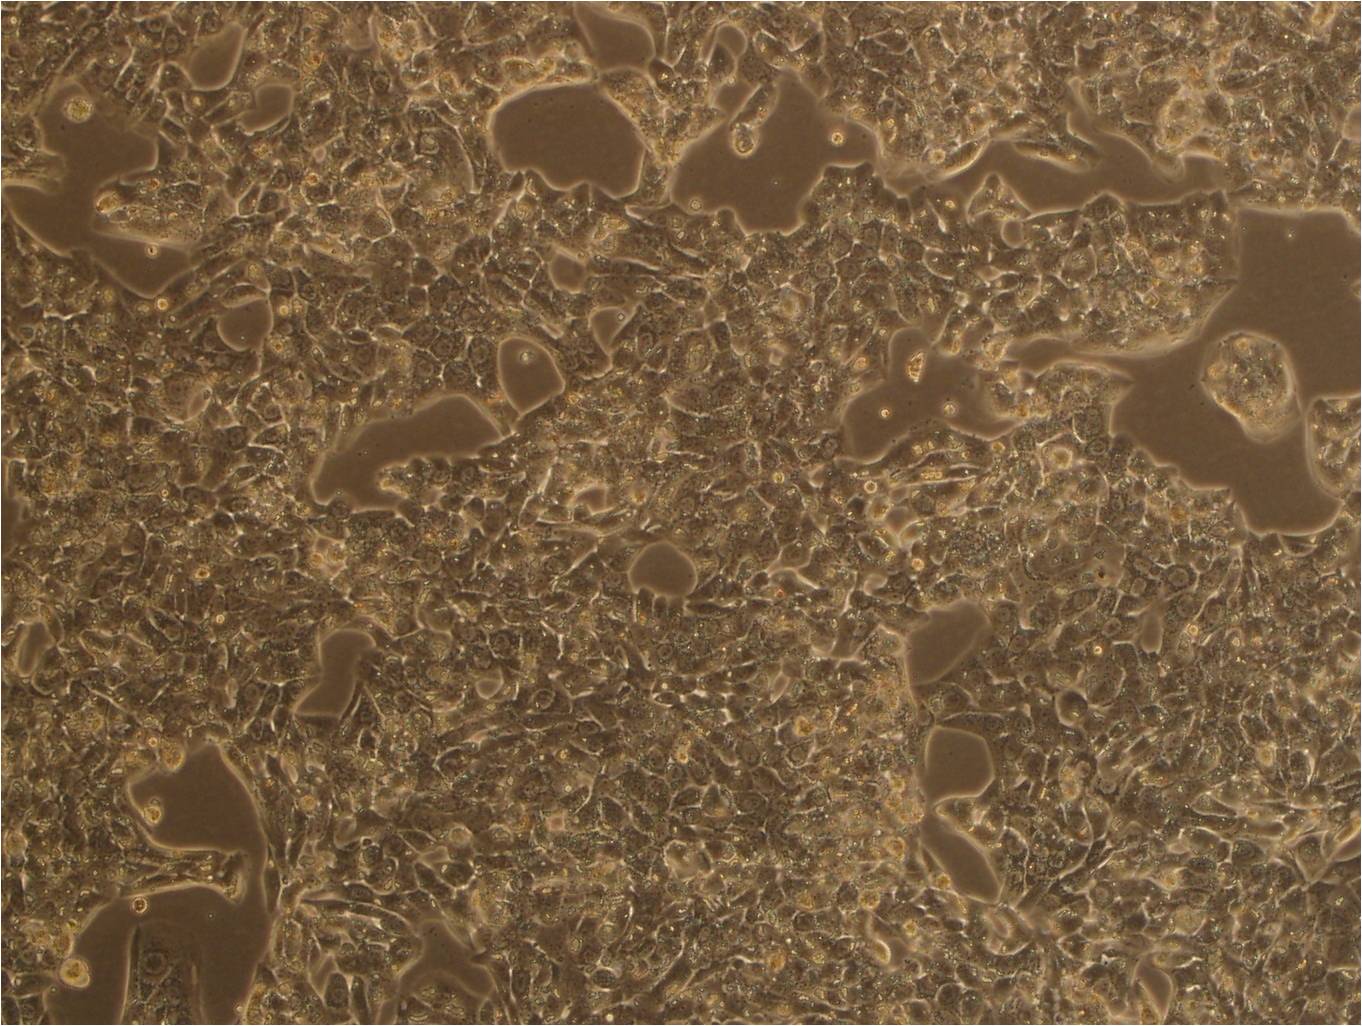 MLTC-1 Cells|小鼠睾丸间质细胞瘤细胞系,MLTC-1 Cells